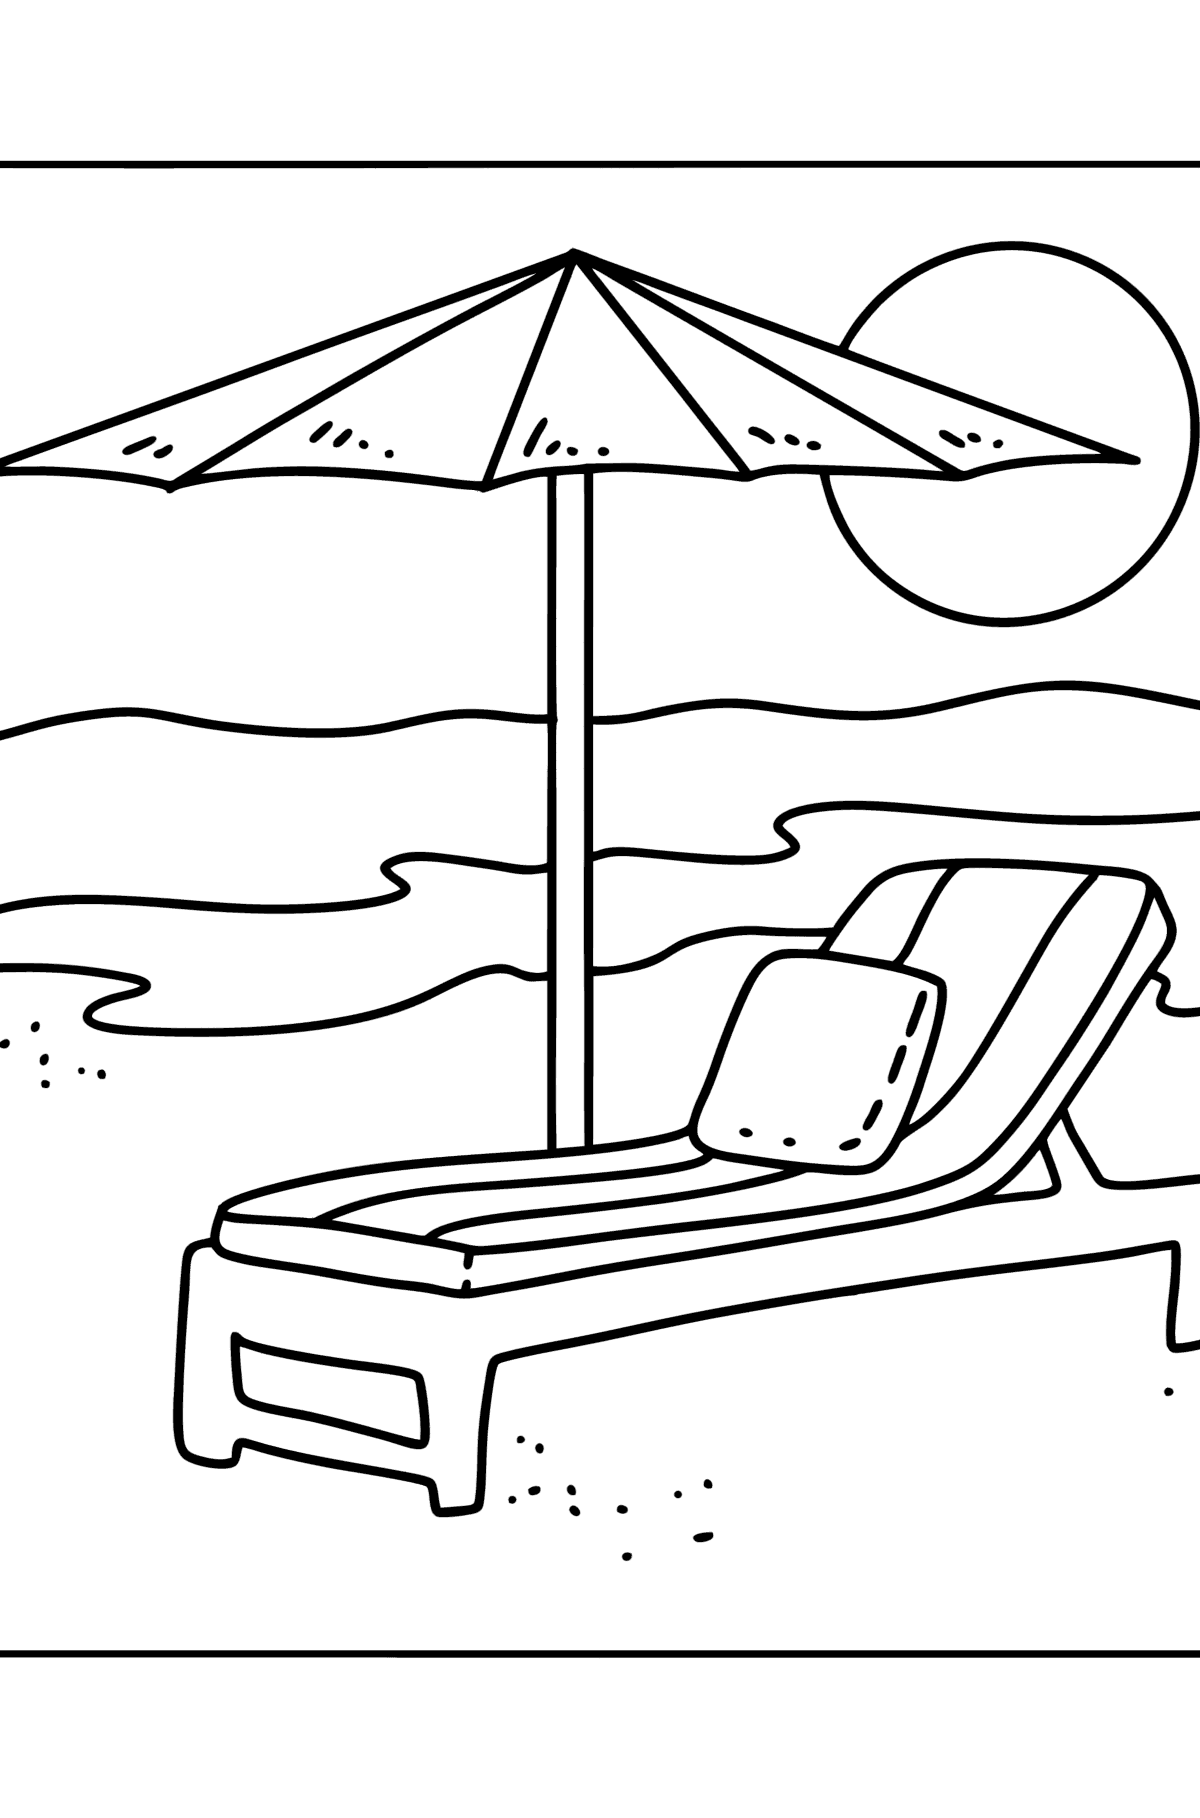 Раскраска - пляжный зонт и шезлонг - Картинки для Детей